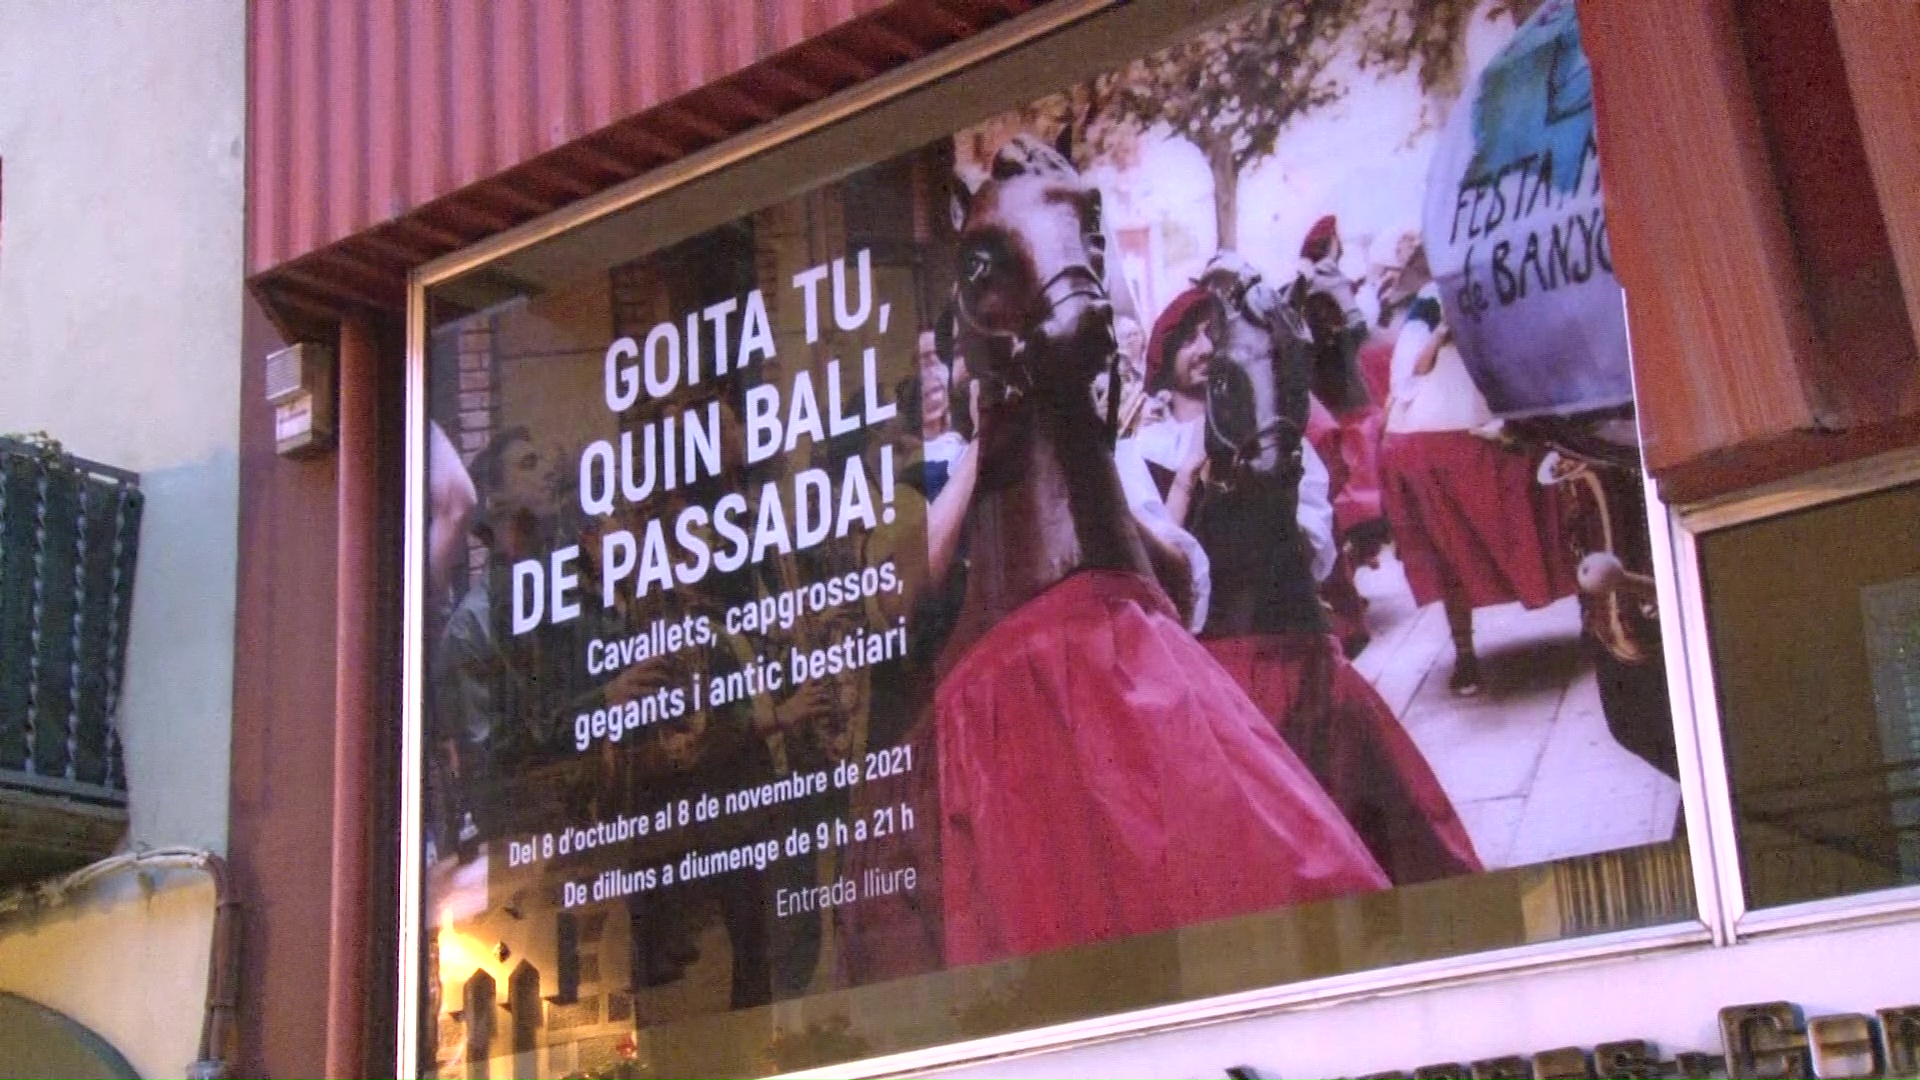 Festa Major de Banyoles 2021: Què explica l'exposició "Goita tu, quin ball de passada!"?